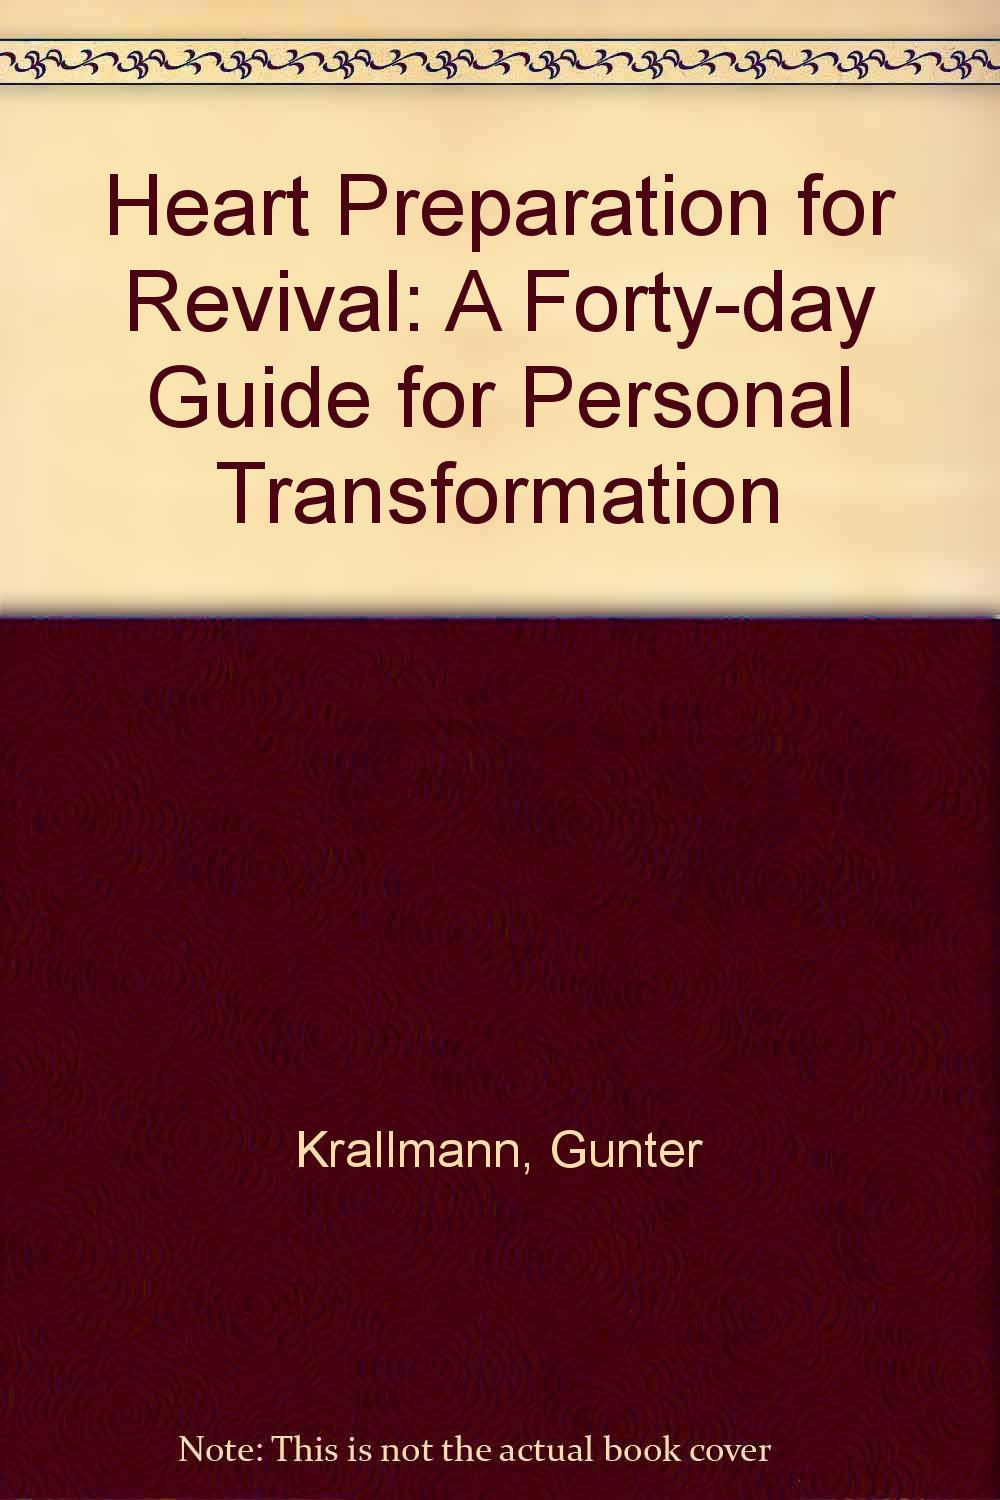 Heart Preparation for Revival